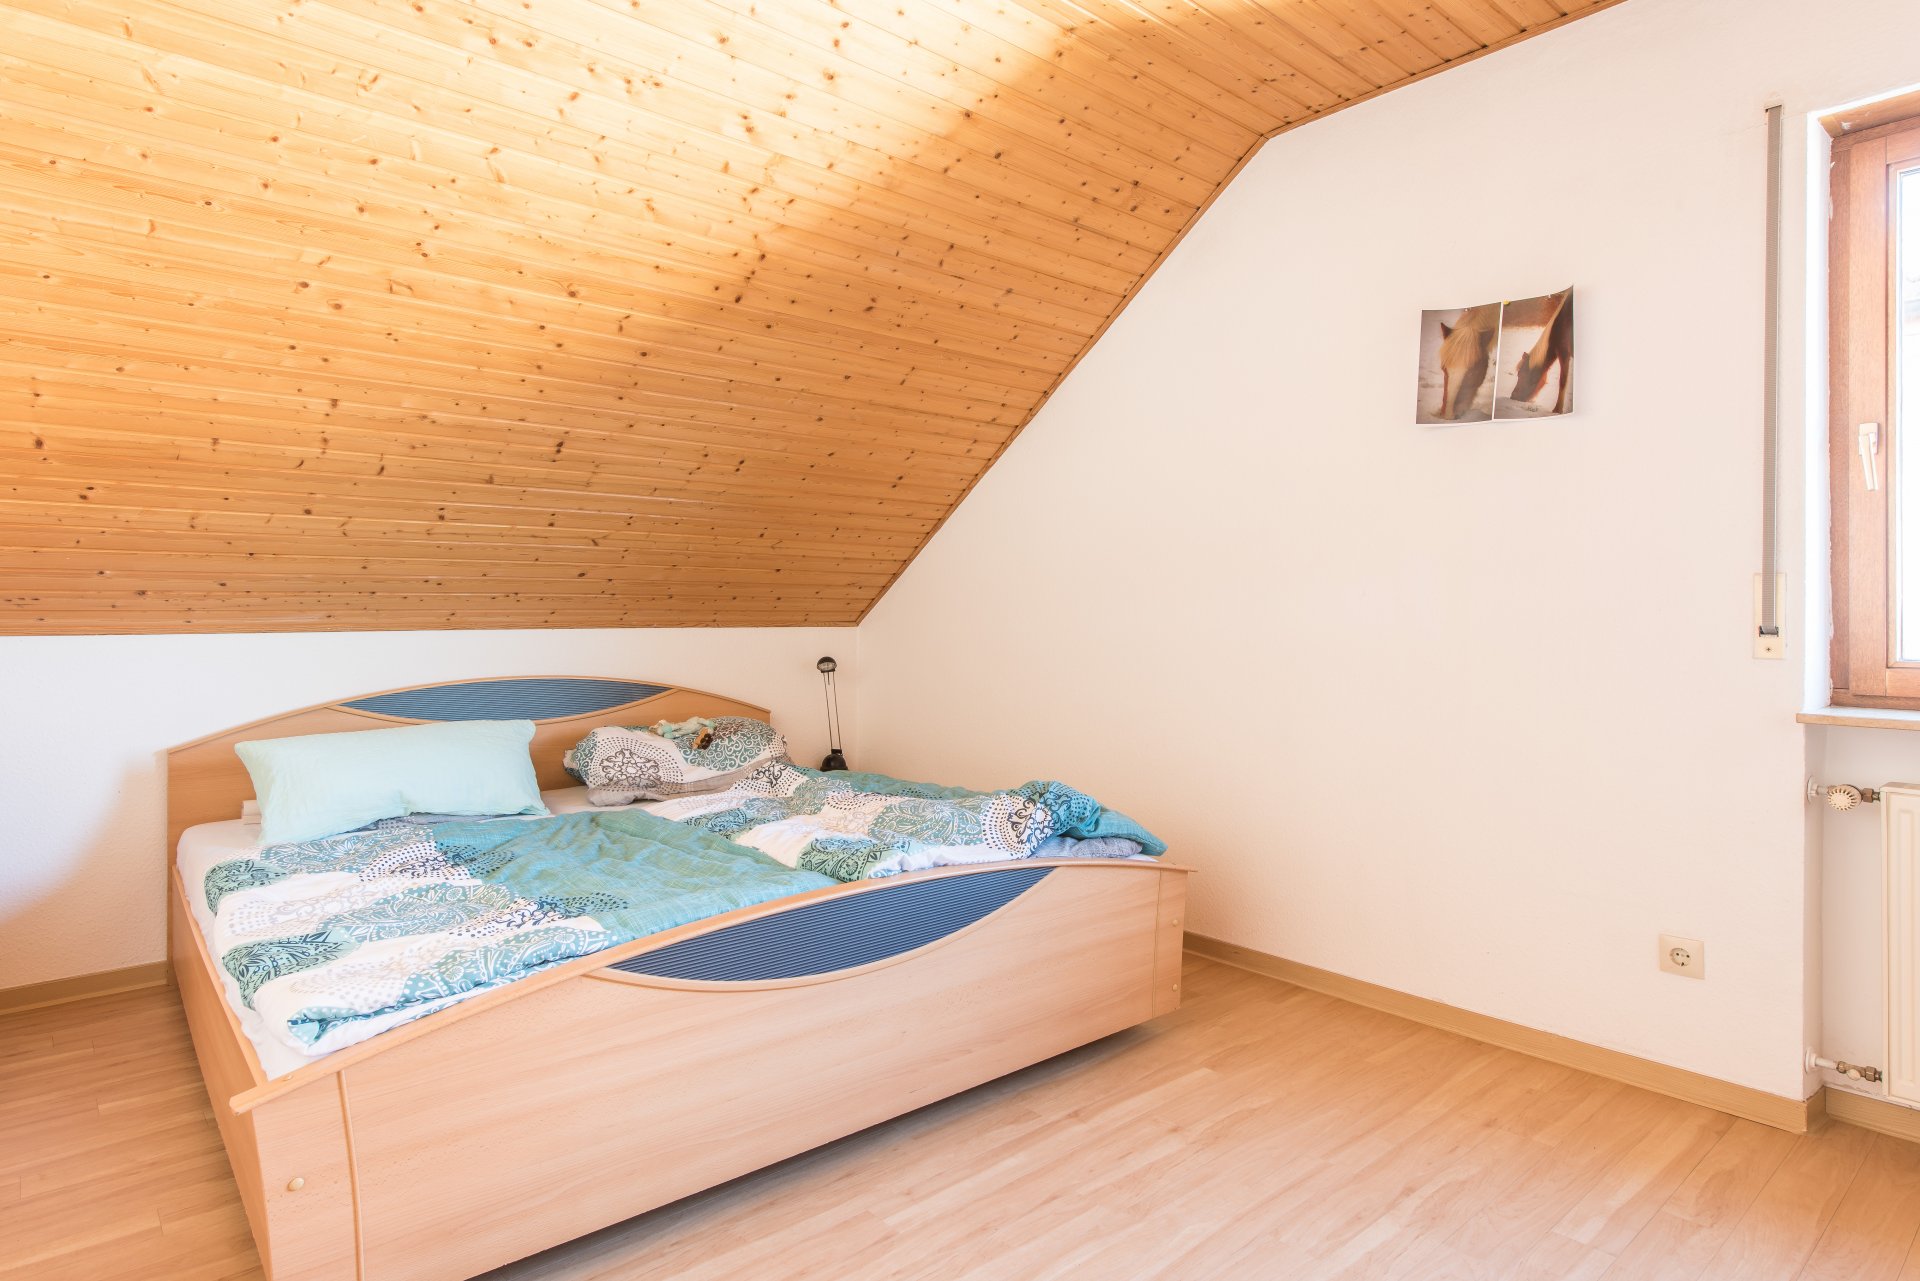 Schlafen in der Dachschräge soll besonders gemütlich sein - Oliver Reifferscheid - Immobilienmakler Darmstadt